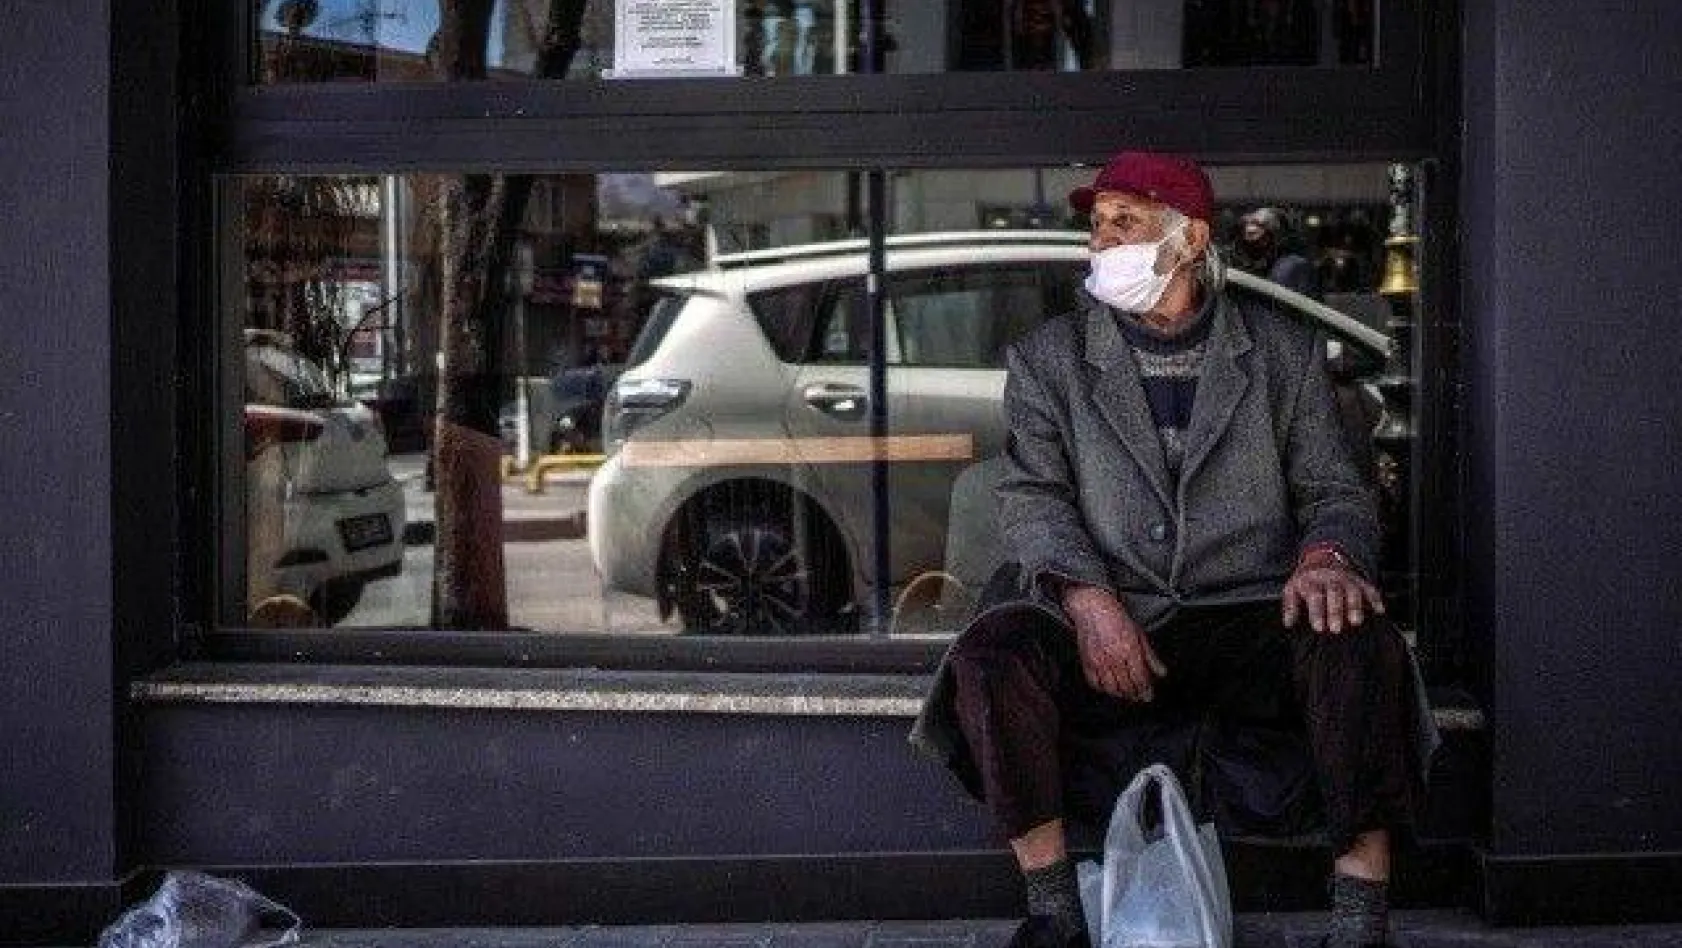 Maskeyle geçen 365 gün: Türkiye'nin virüsle 1 yıllık imtihanı